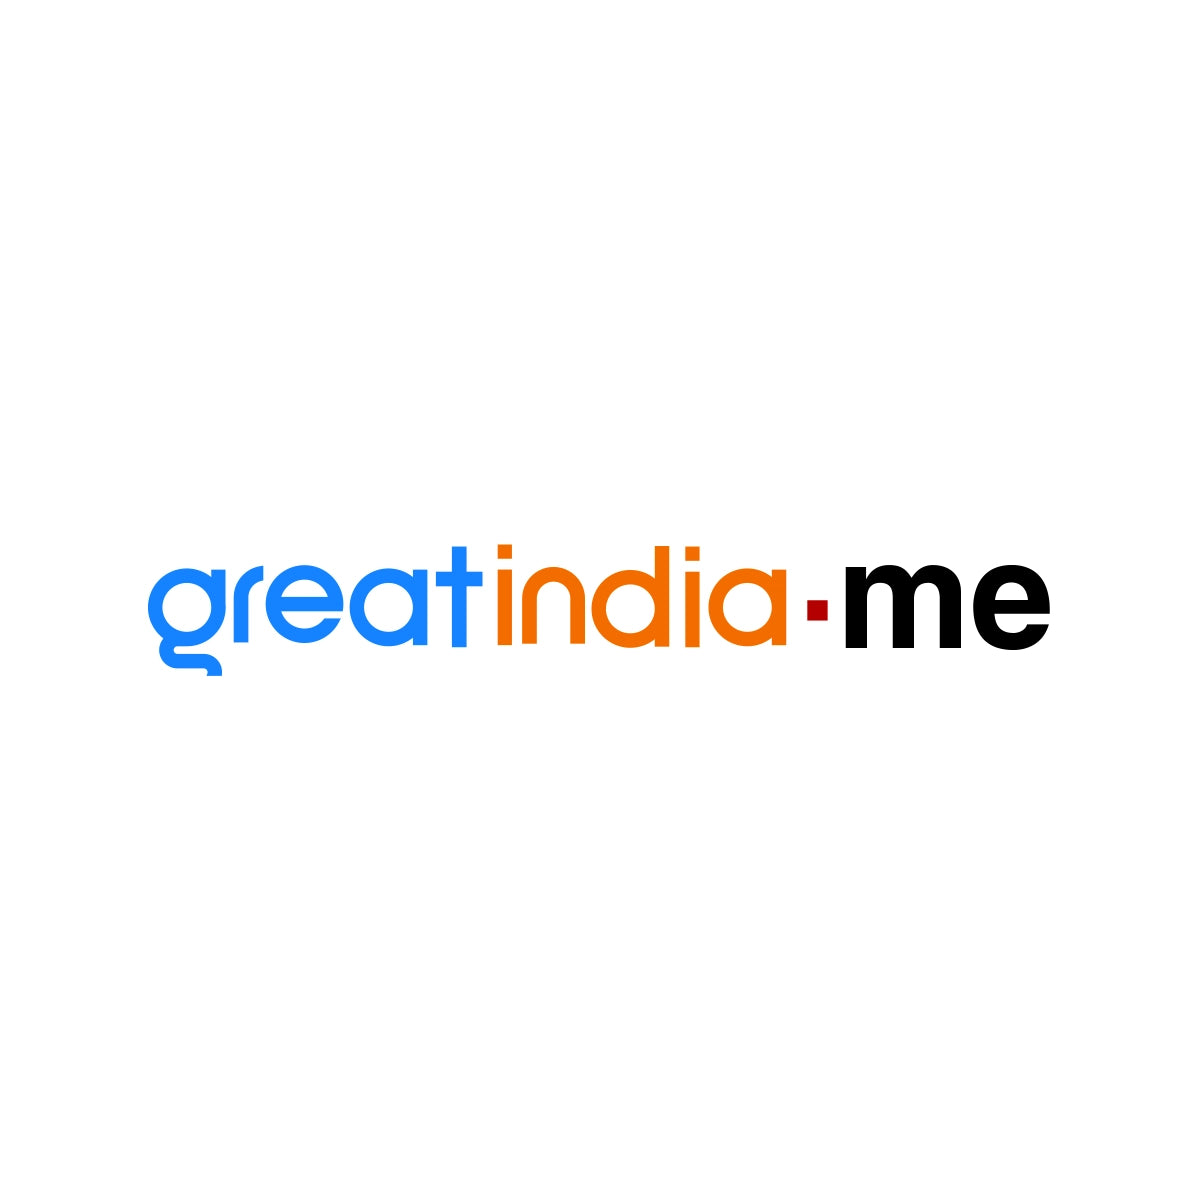 greatindia.me